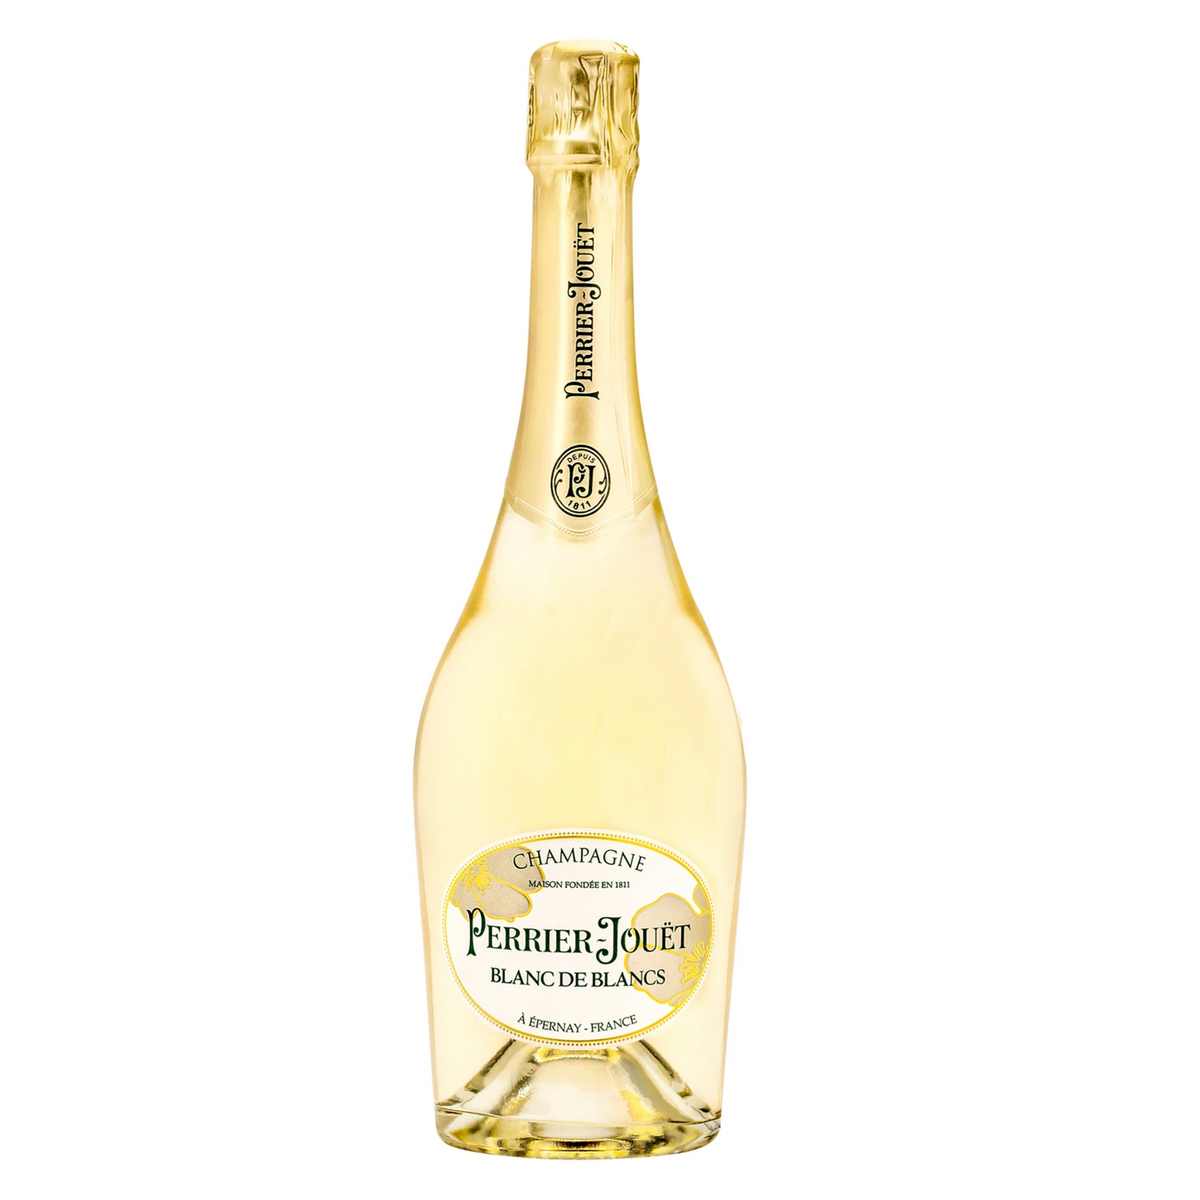 PERRIER JOUET Champagne Brut Blanc de Blancs NV